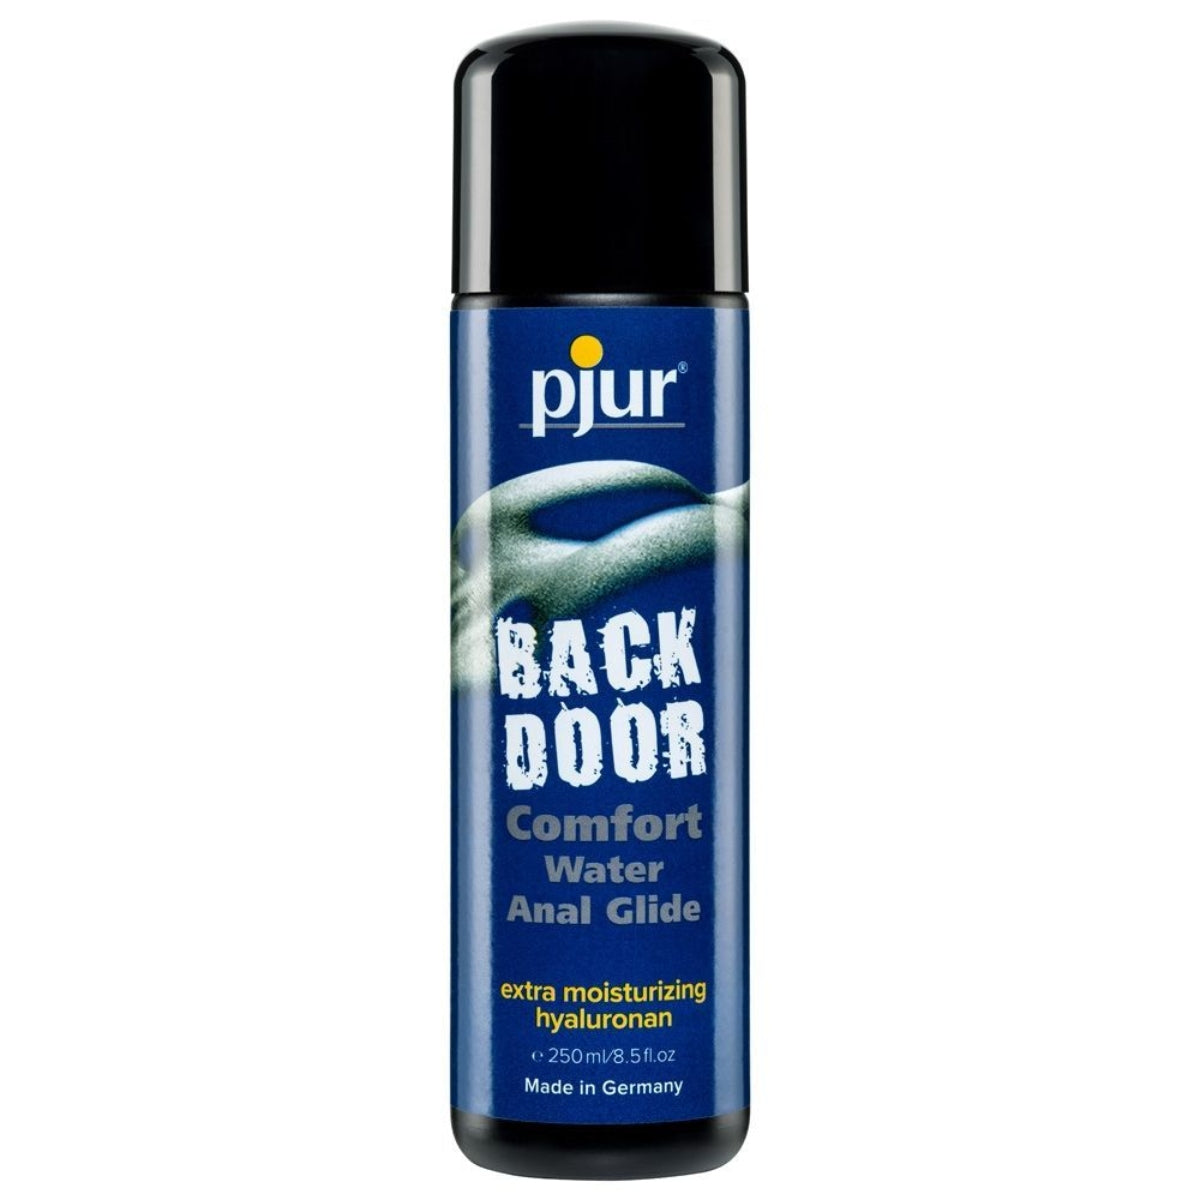 Pjur Back Door Comfort Anal Glide Water Based Lube 250ml